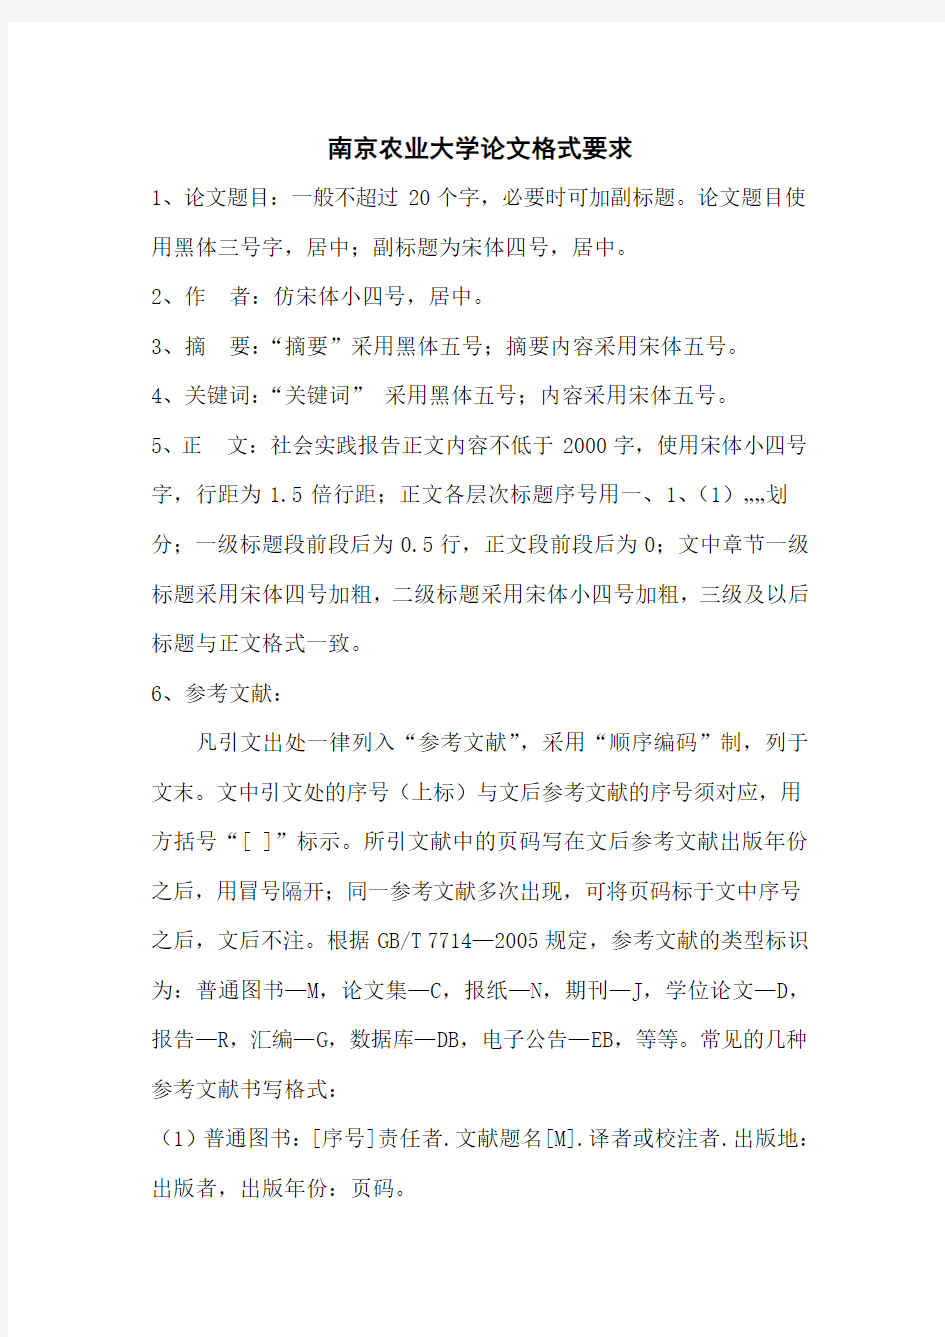 南京农业大学论文格式要求